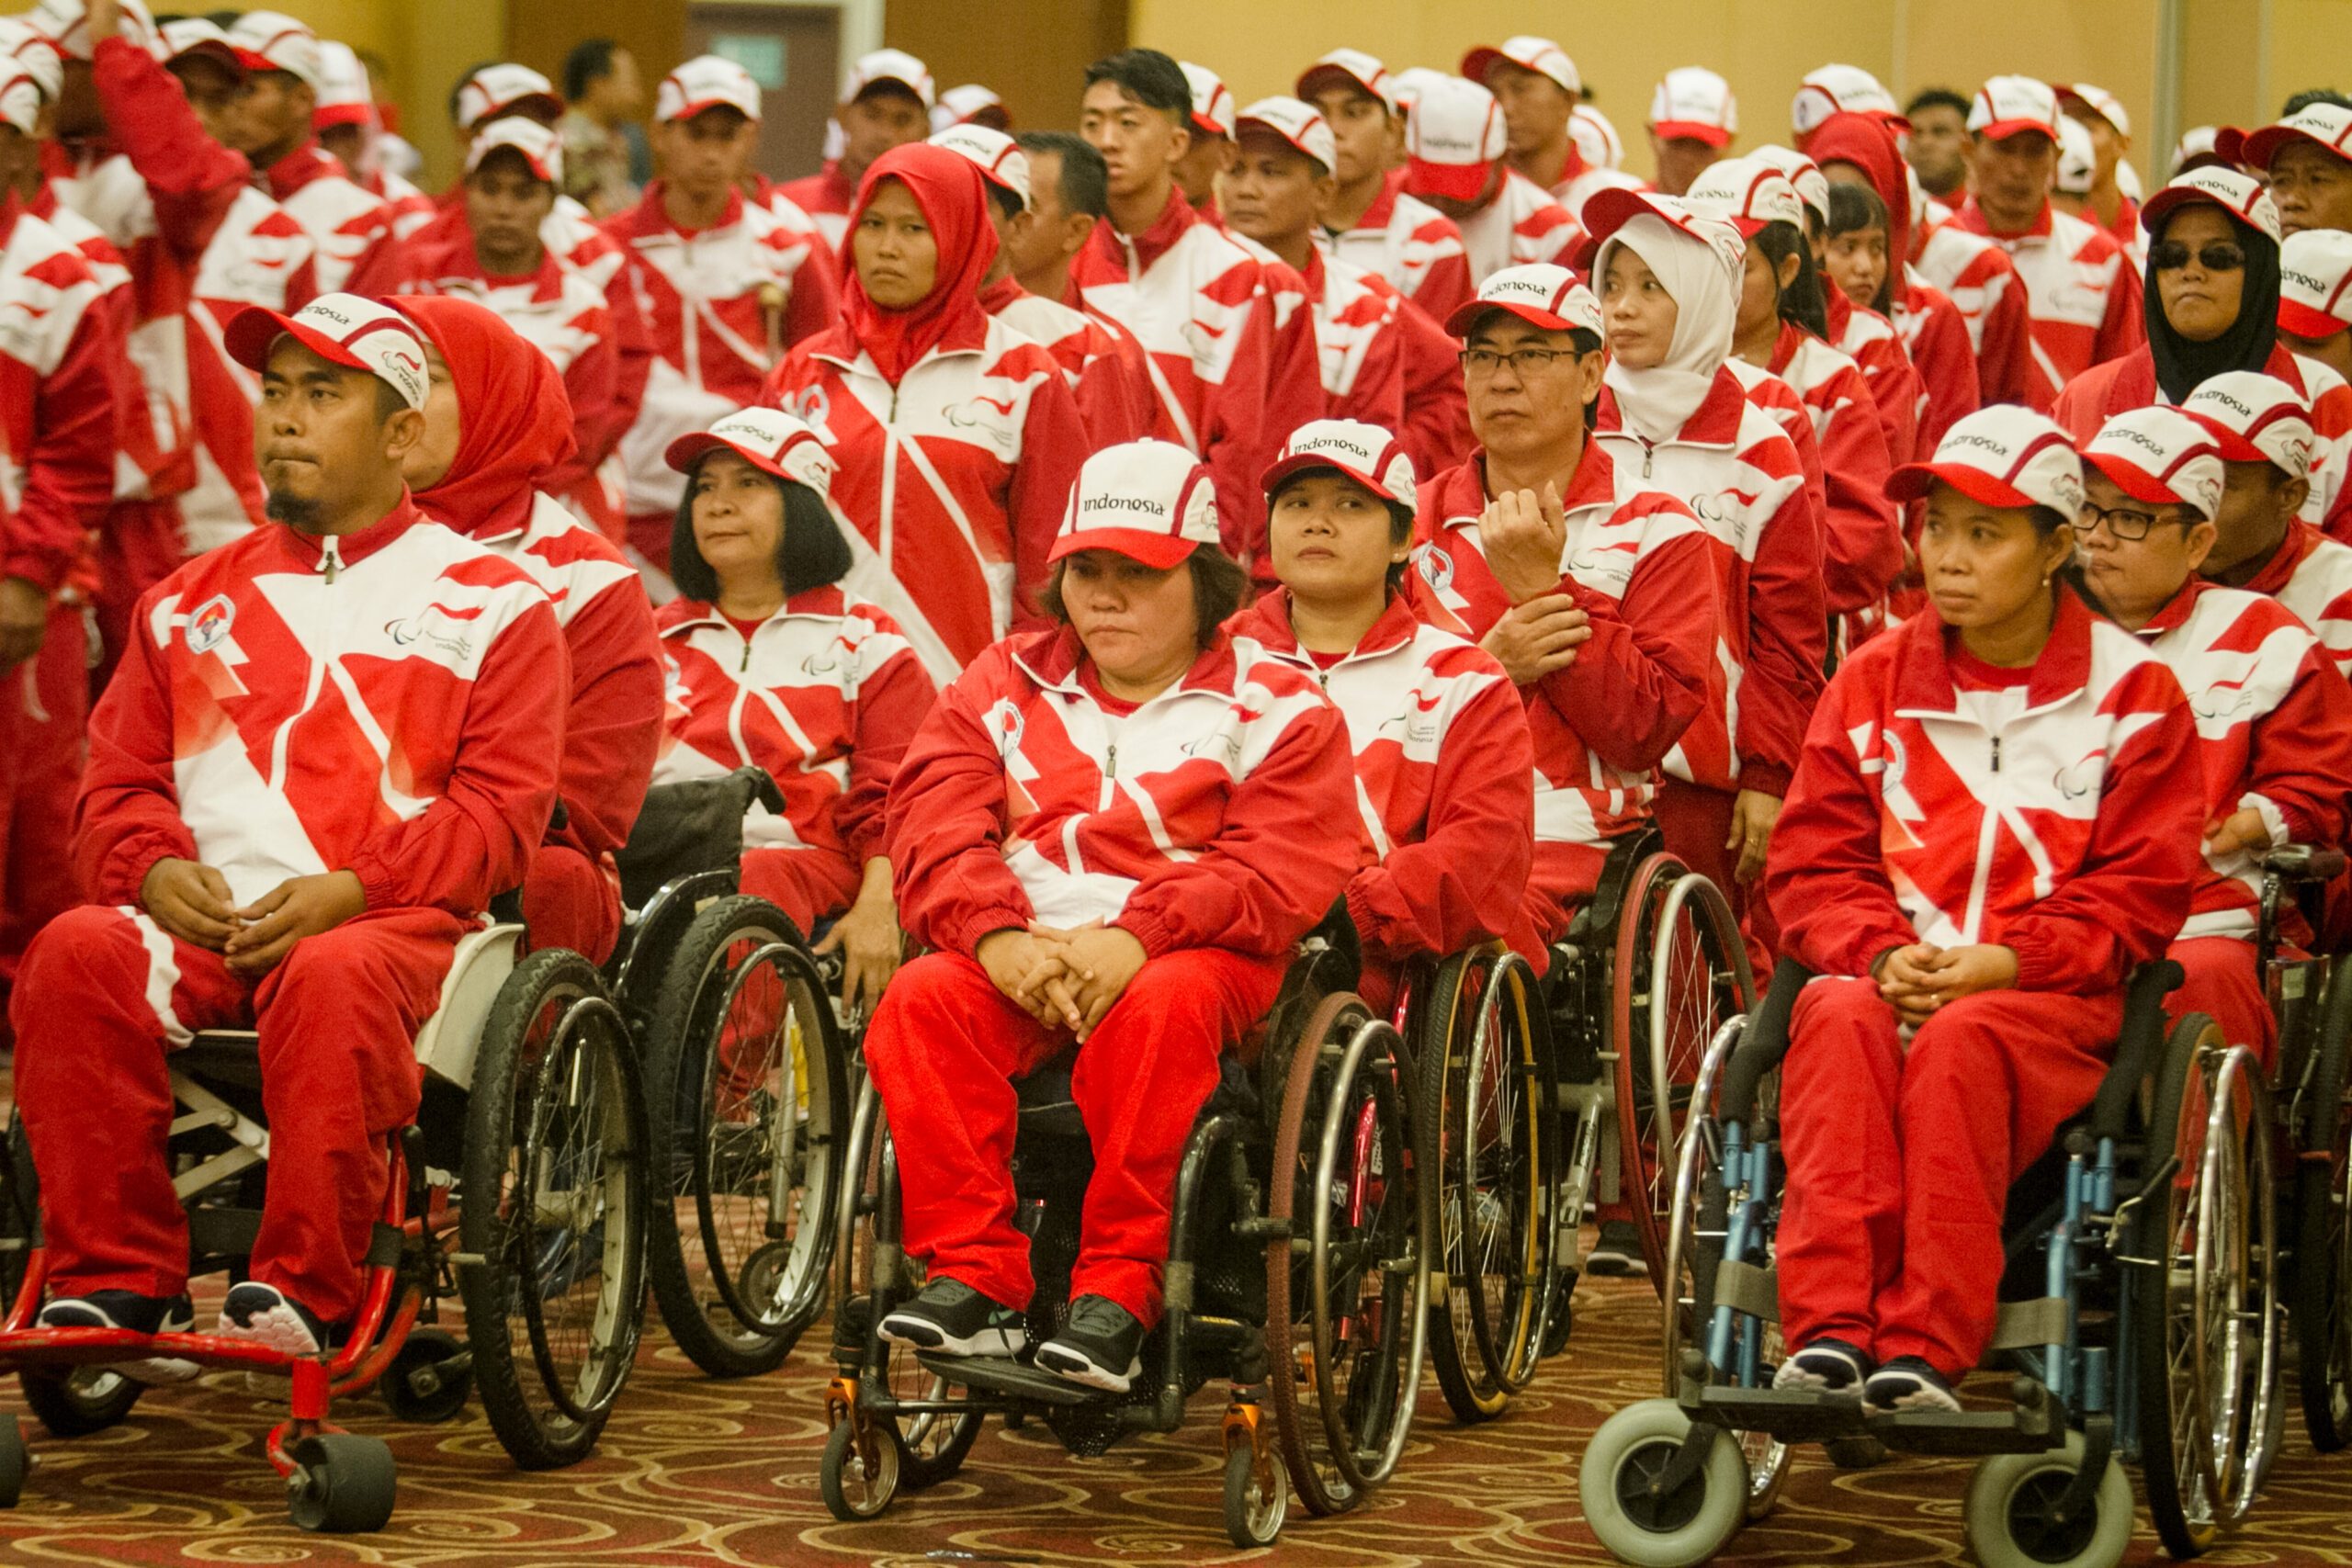 Klasemen ASEAN Para Games 2017: Indonesia unggul di peringkat teratas